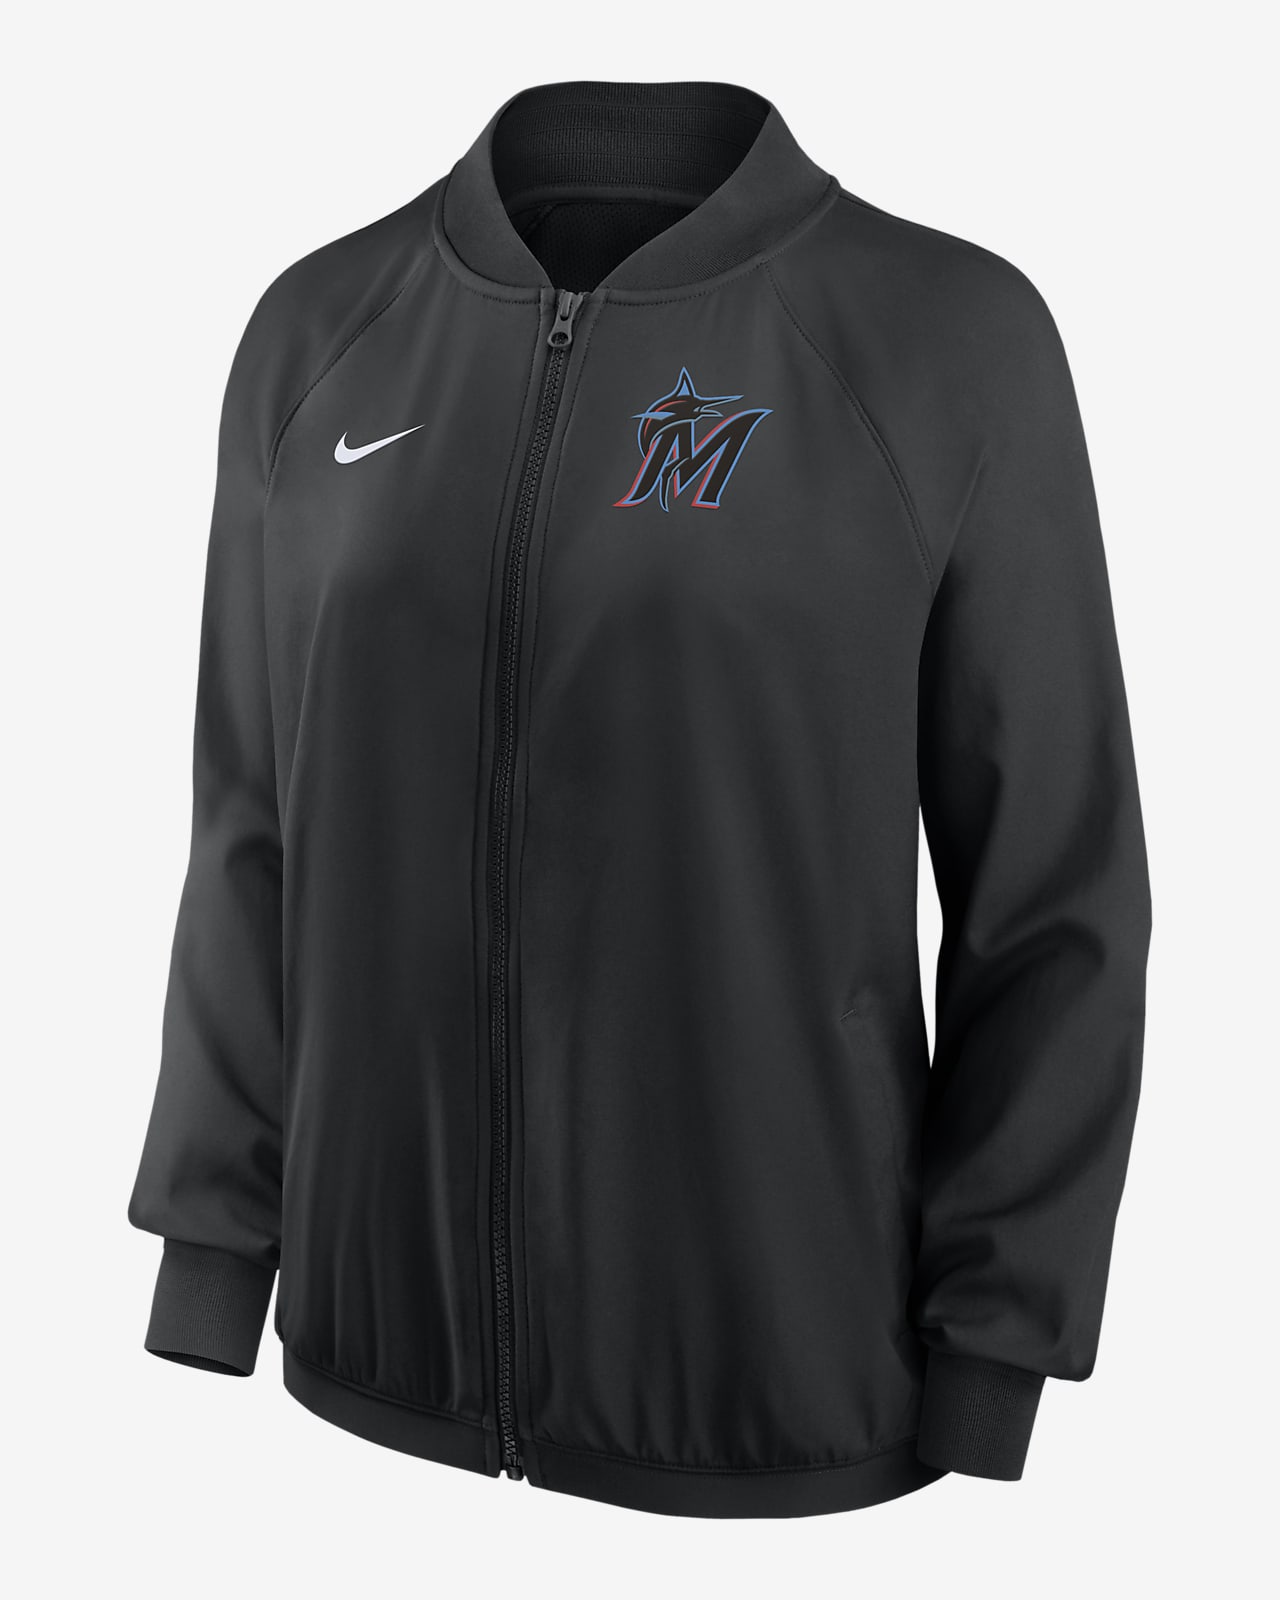 Nike Dri-FIT Team (MLB Miami Marlins) Women's Full-Zip Jacket